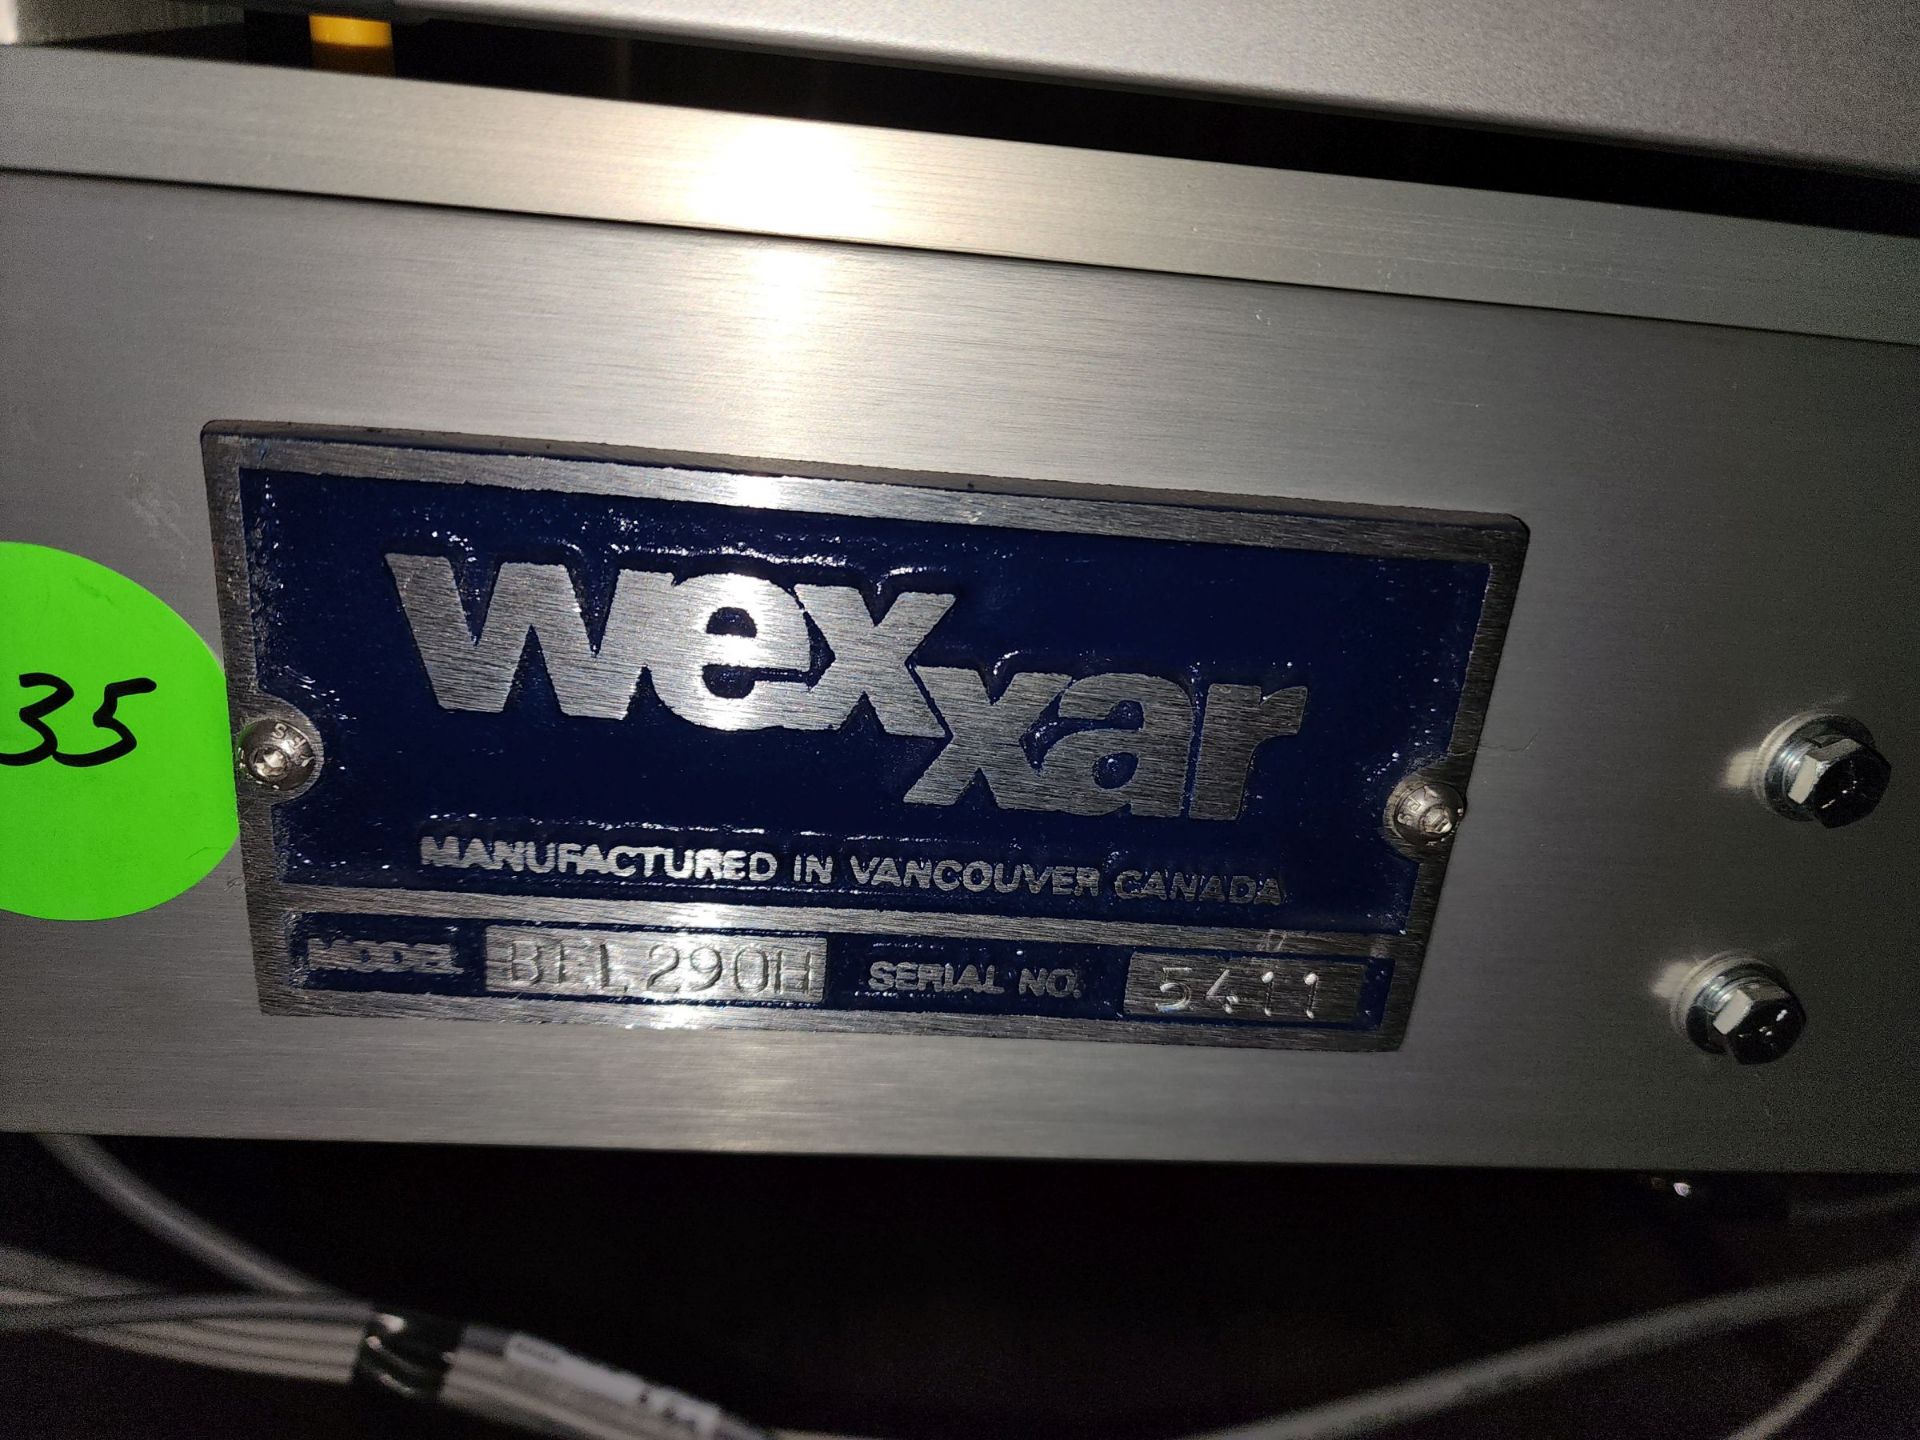 Wexxar Case Hot Glue Sealer, Model BEL290H - Image 4 of 15